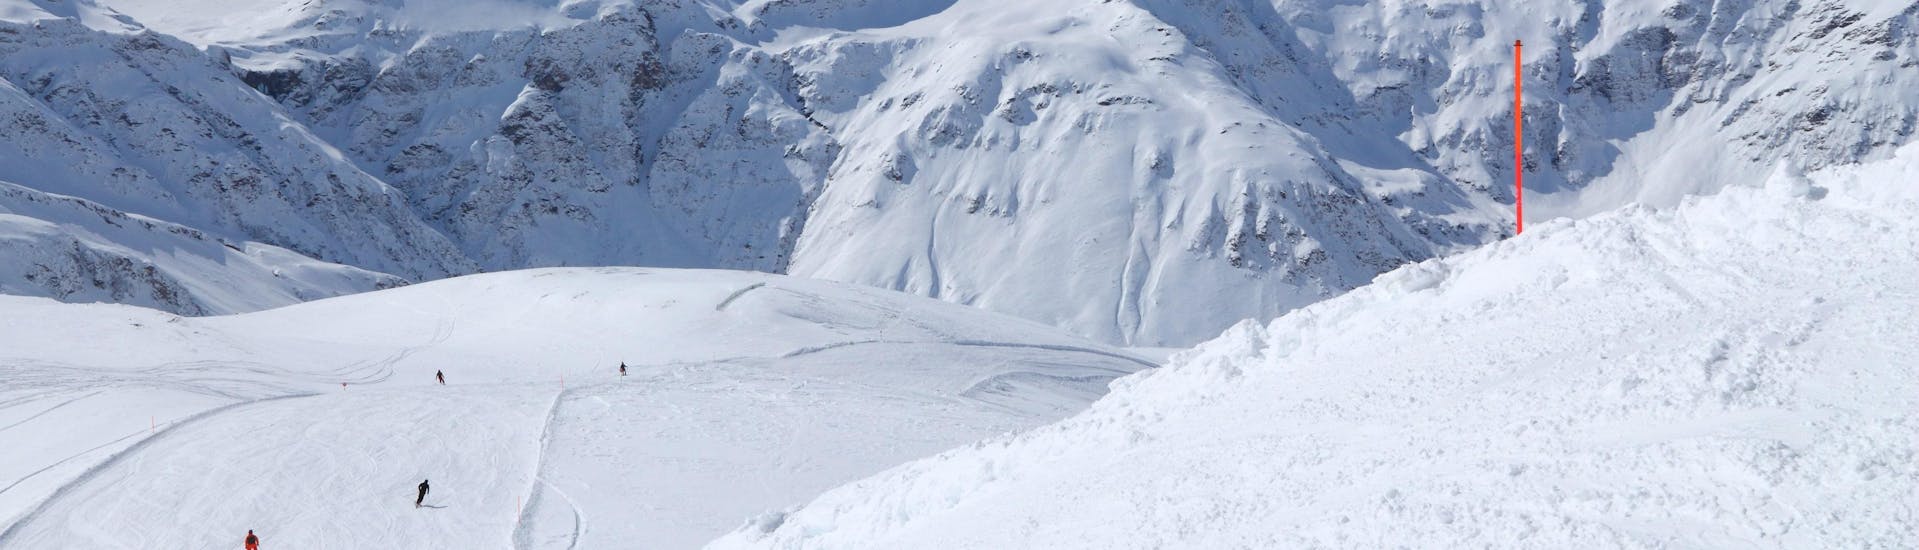 Blick auf die verschneiten Pisten von Sportgastein im Gasteinertal, wo die örtlichen Skischulen ihre Skikurse anbieten.